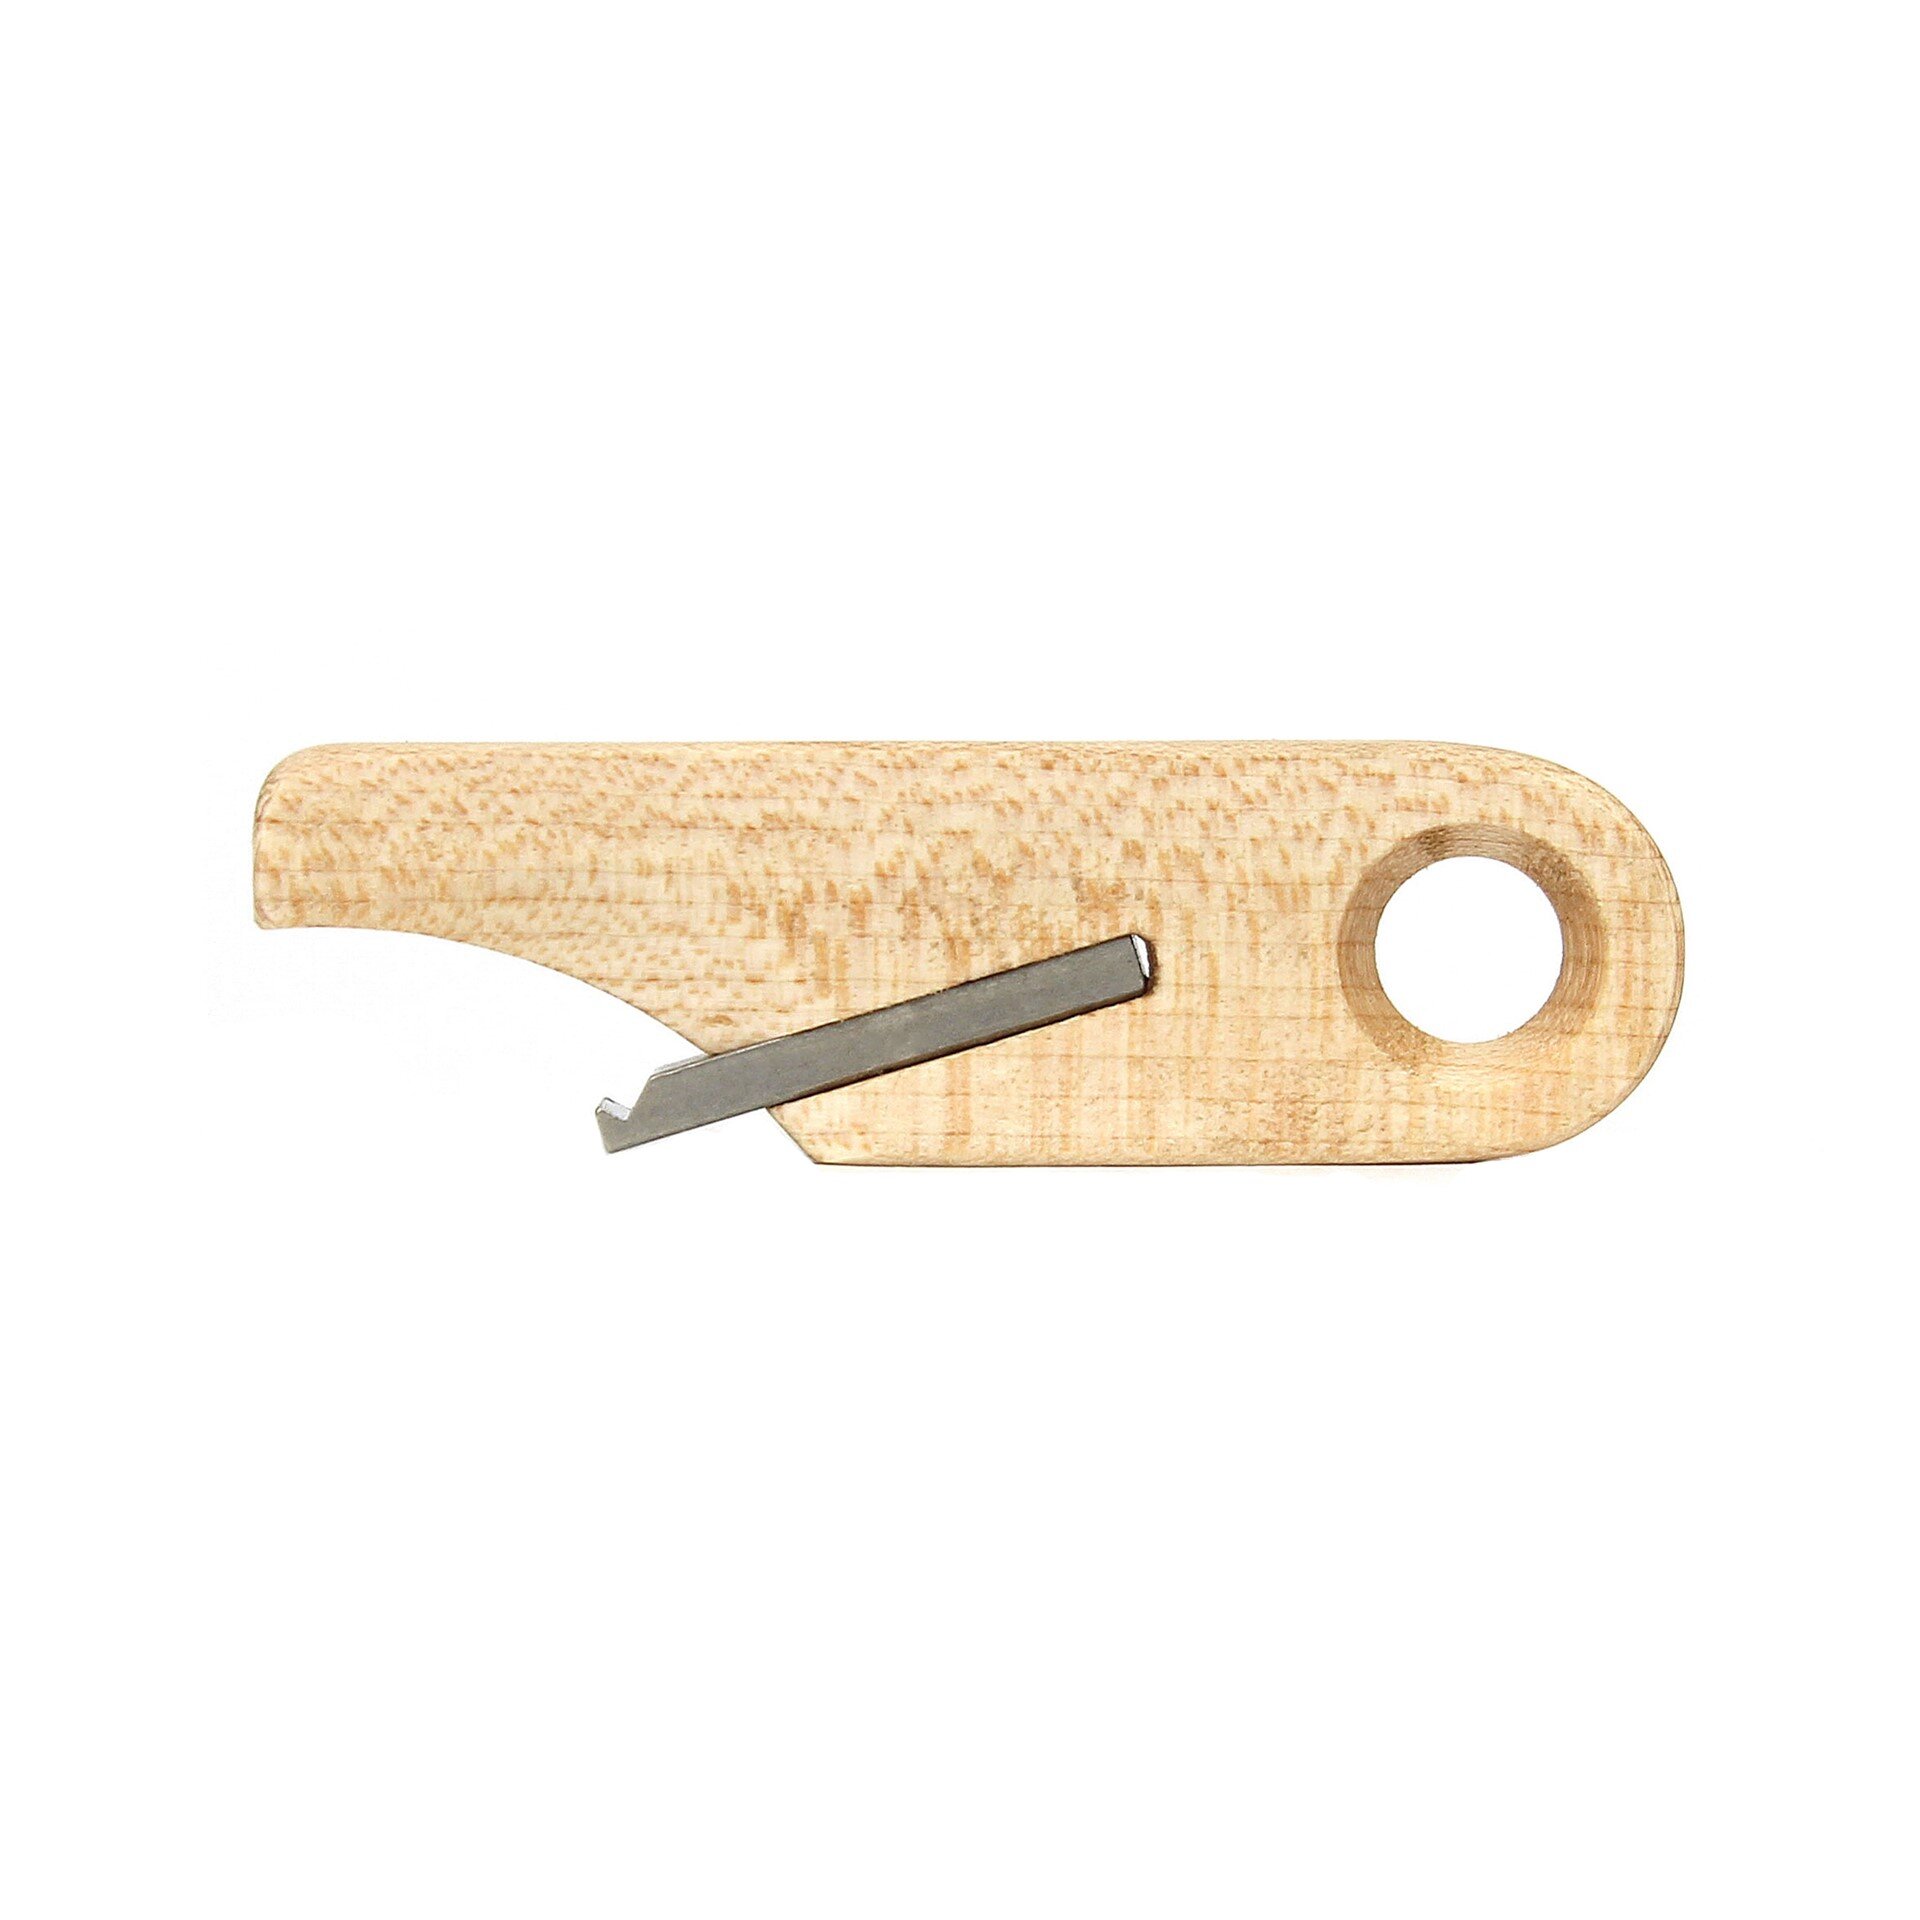 Wooden Bottle Opener Keychain by Rift Wood Company - Hard Maple.JPG